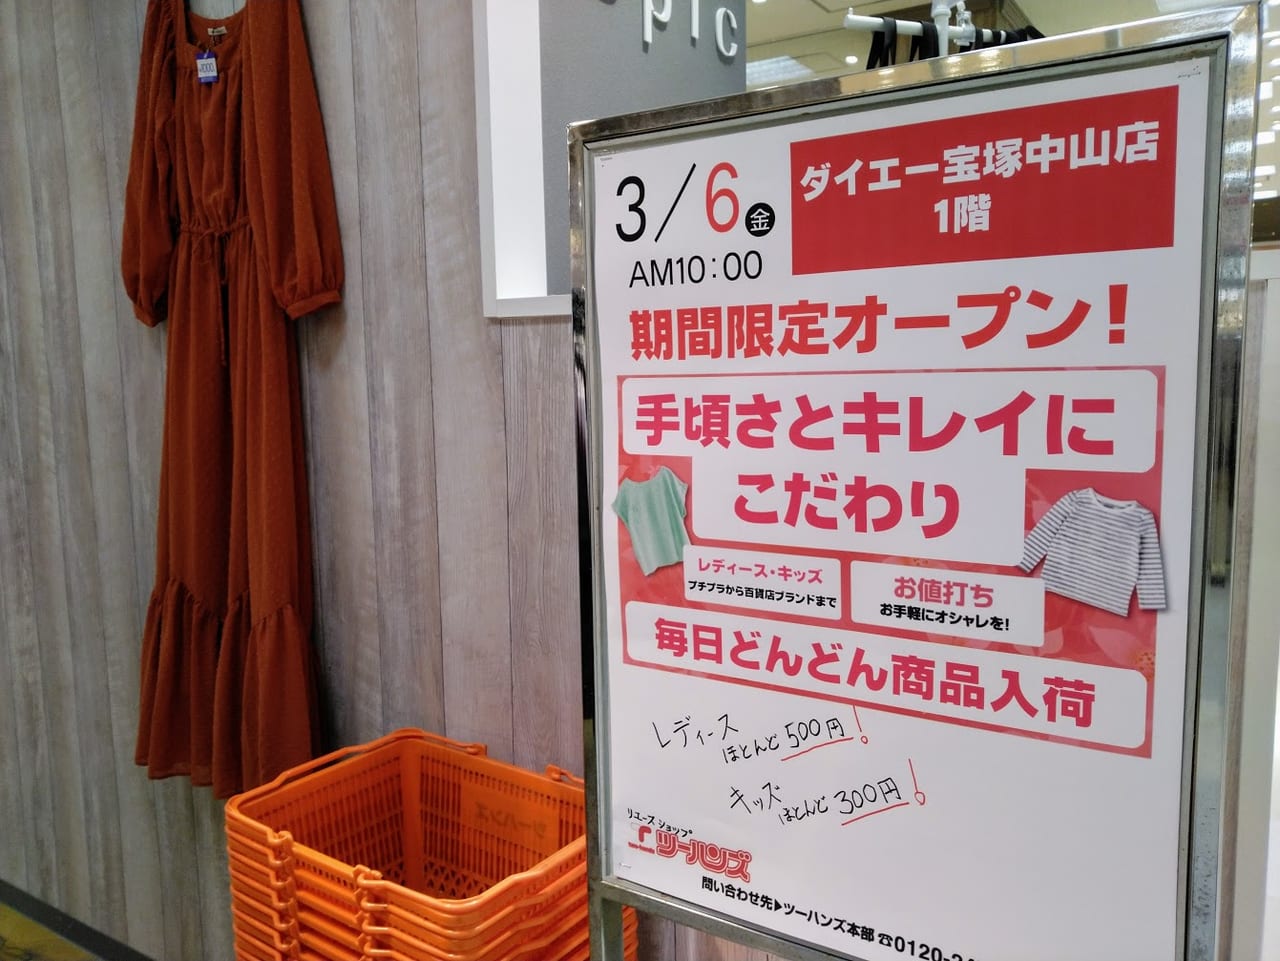 ツーハンズ宝塚中山店はポップアップショップです